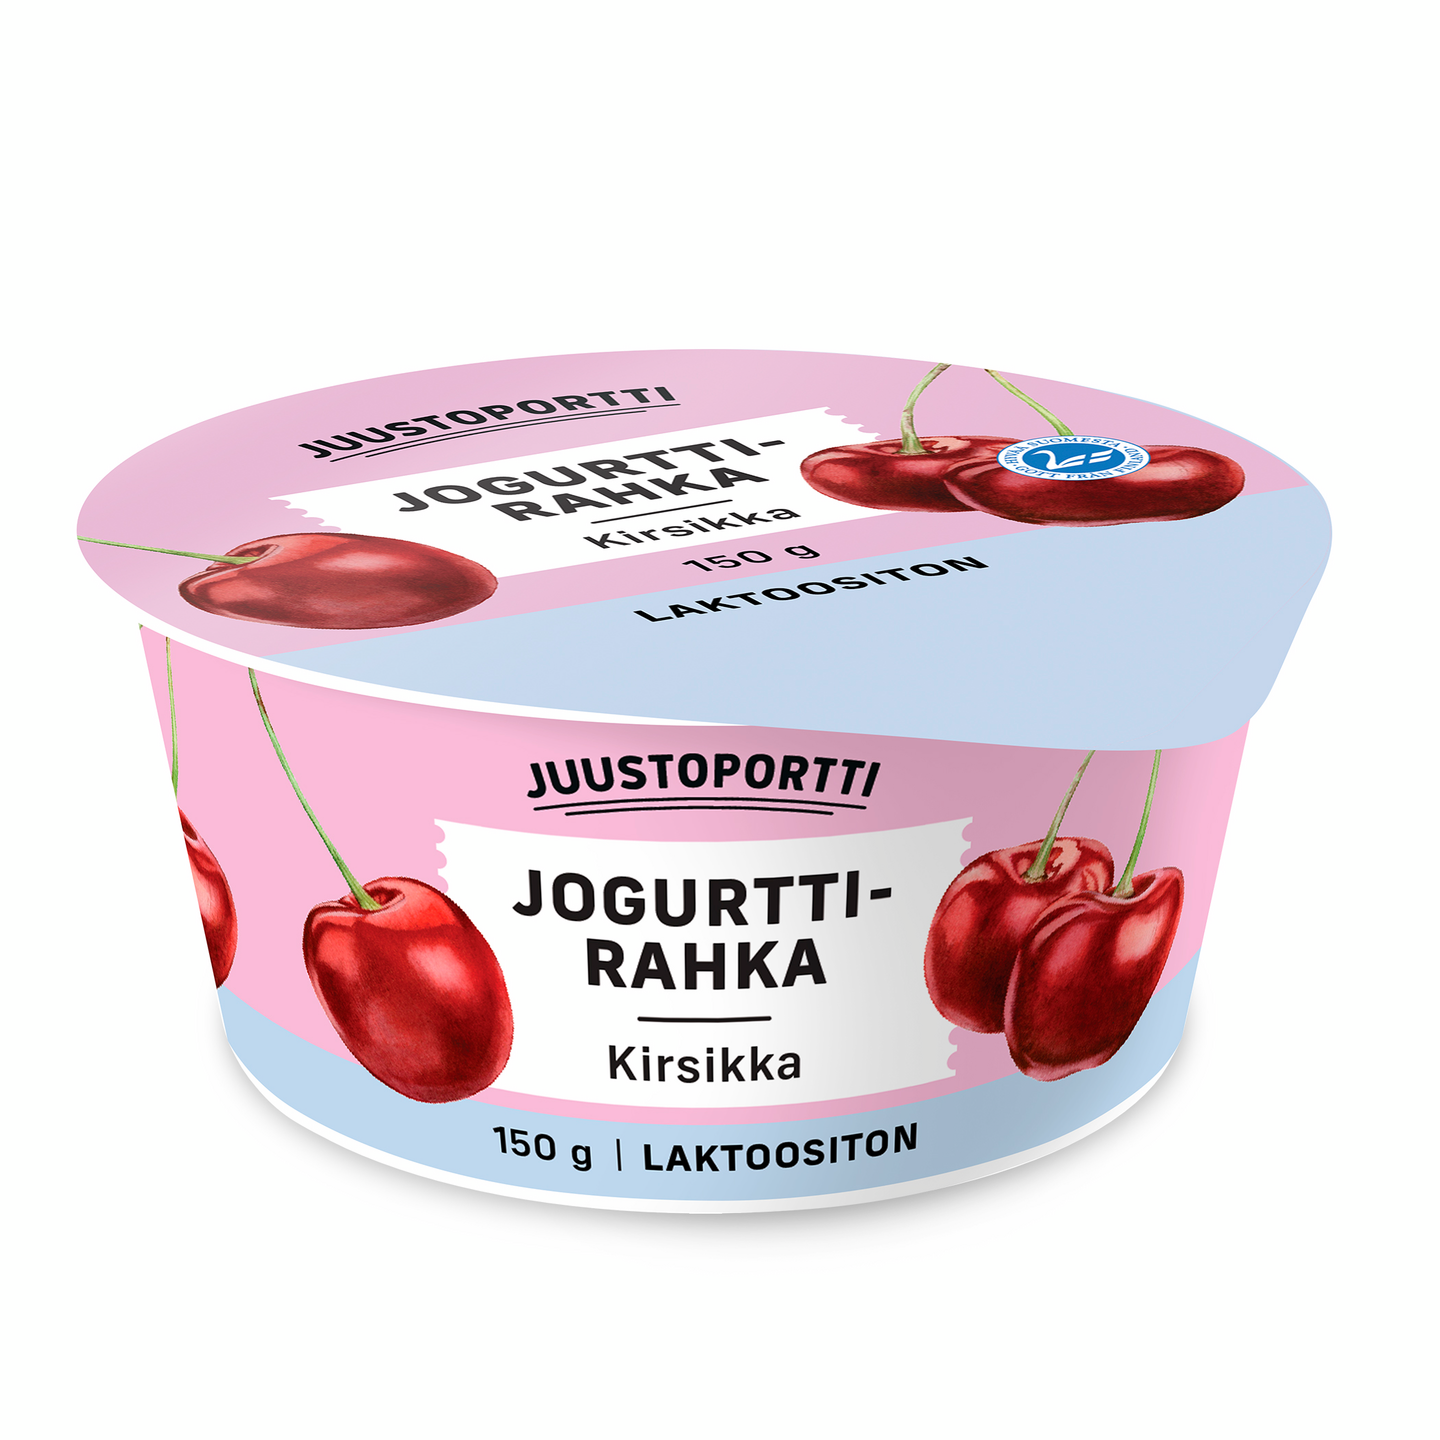 Juustoportti jogurttirahka 150g kirsikka laktoositon